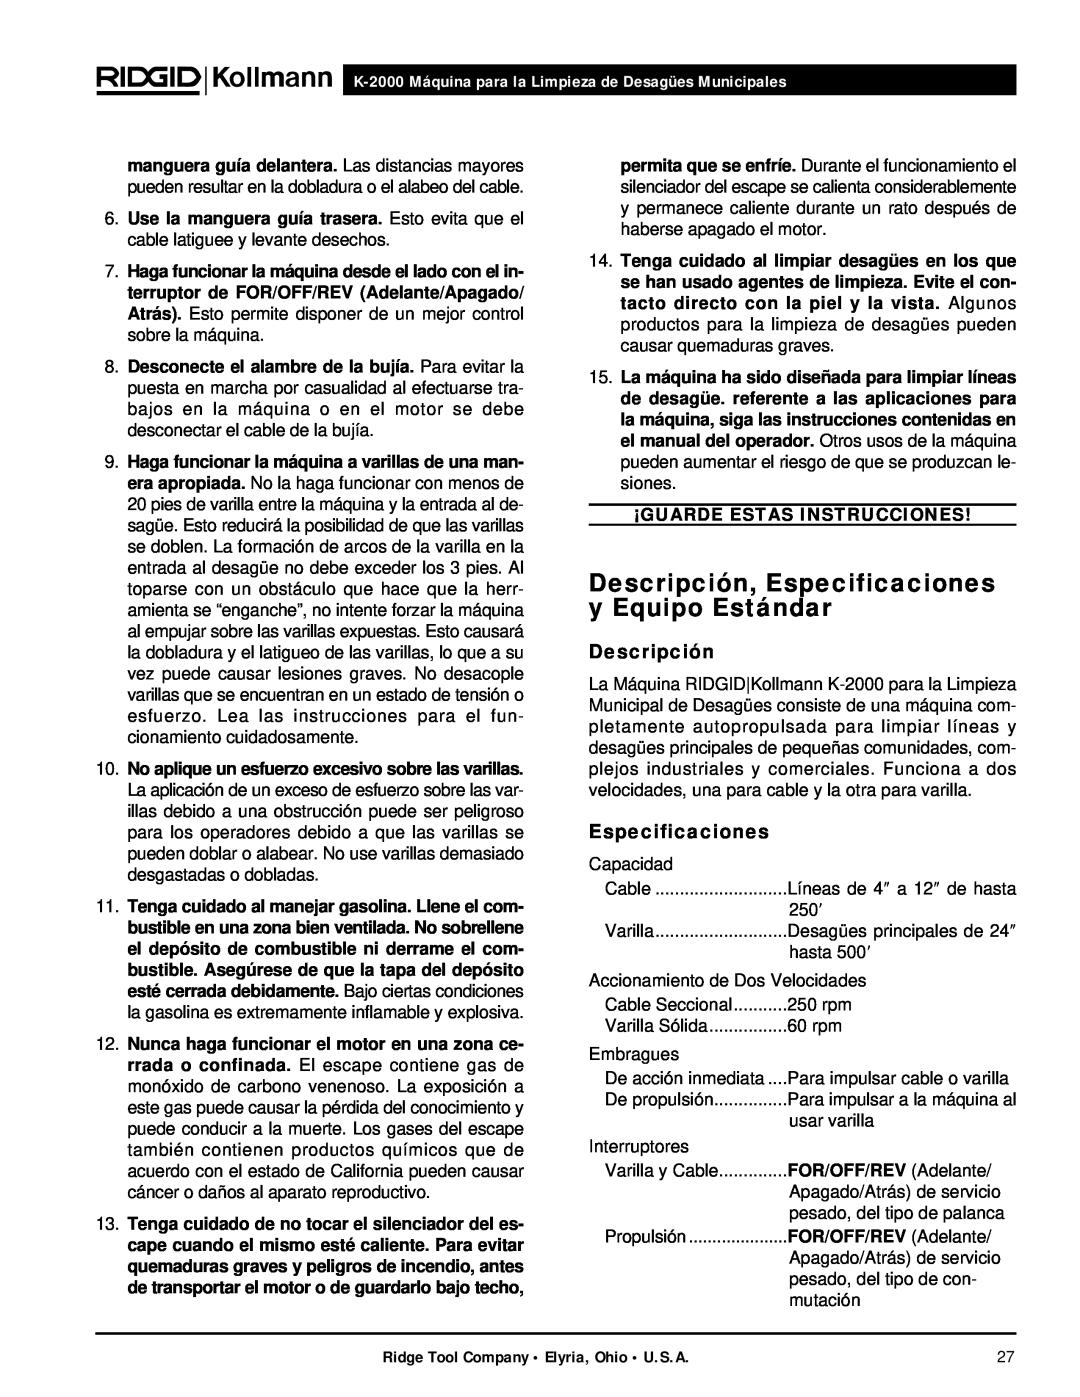 RIDGID manual Descripción, Especificaciones y Equipo Estándar, K-2000 Máquina para la Limpieza de Desagües Municipales 